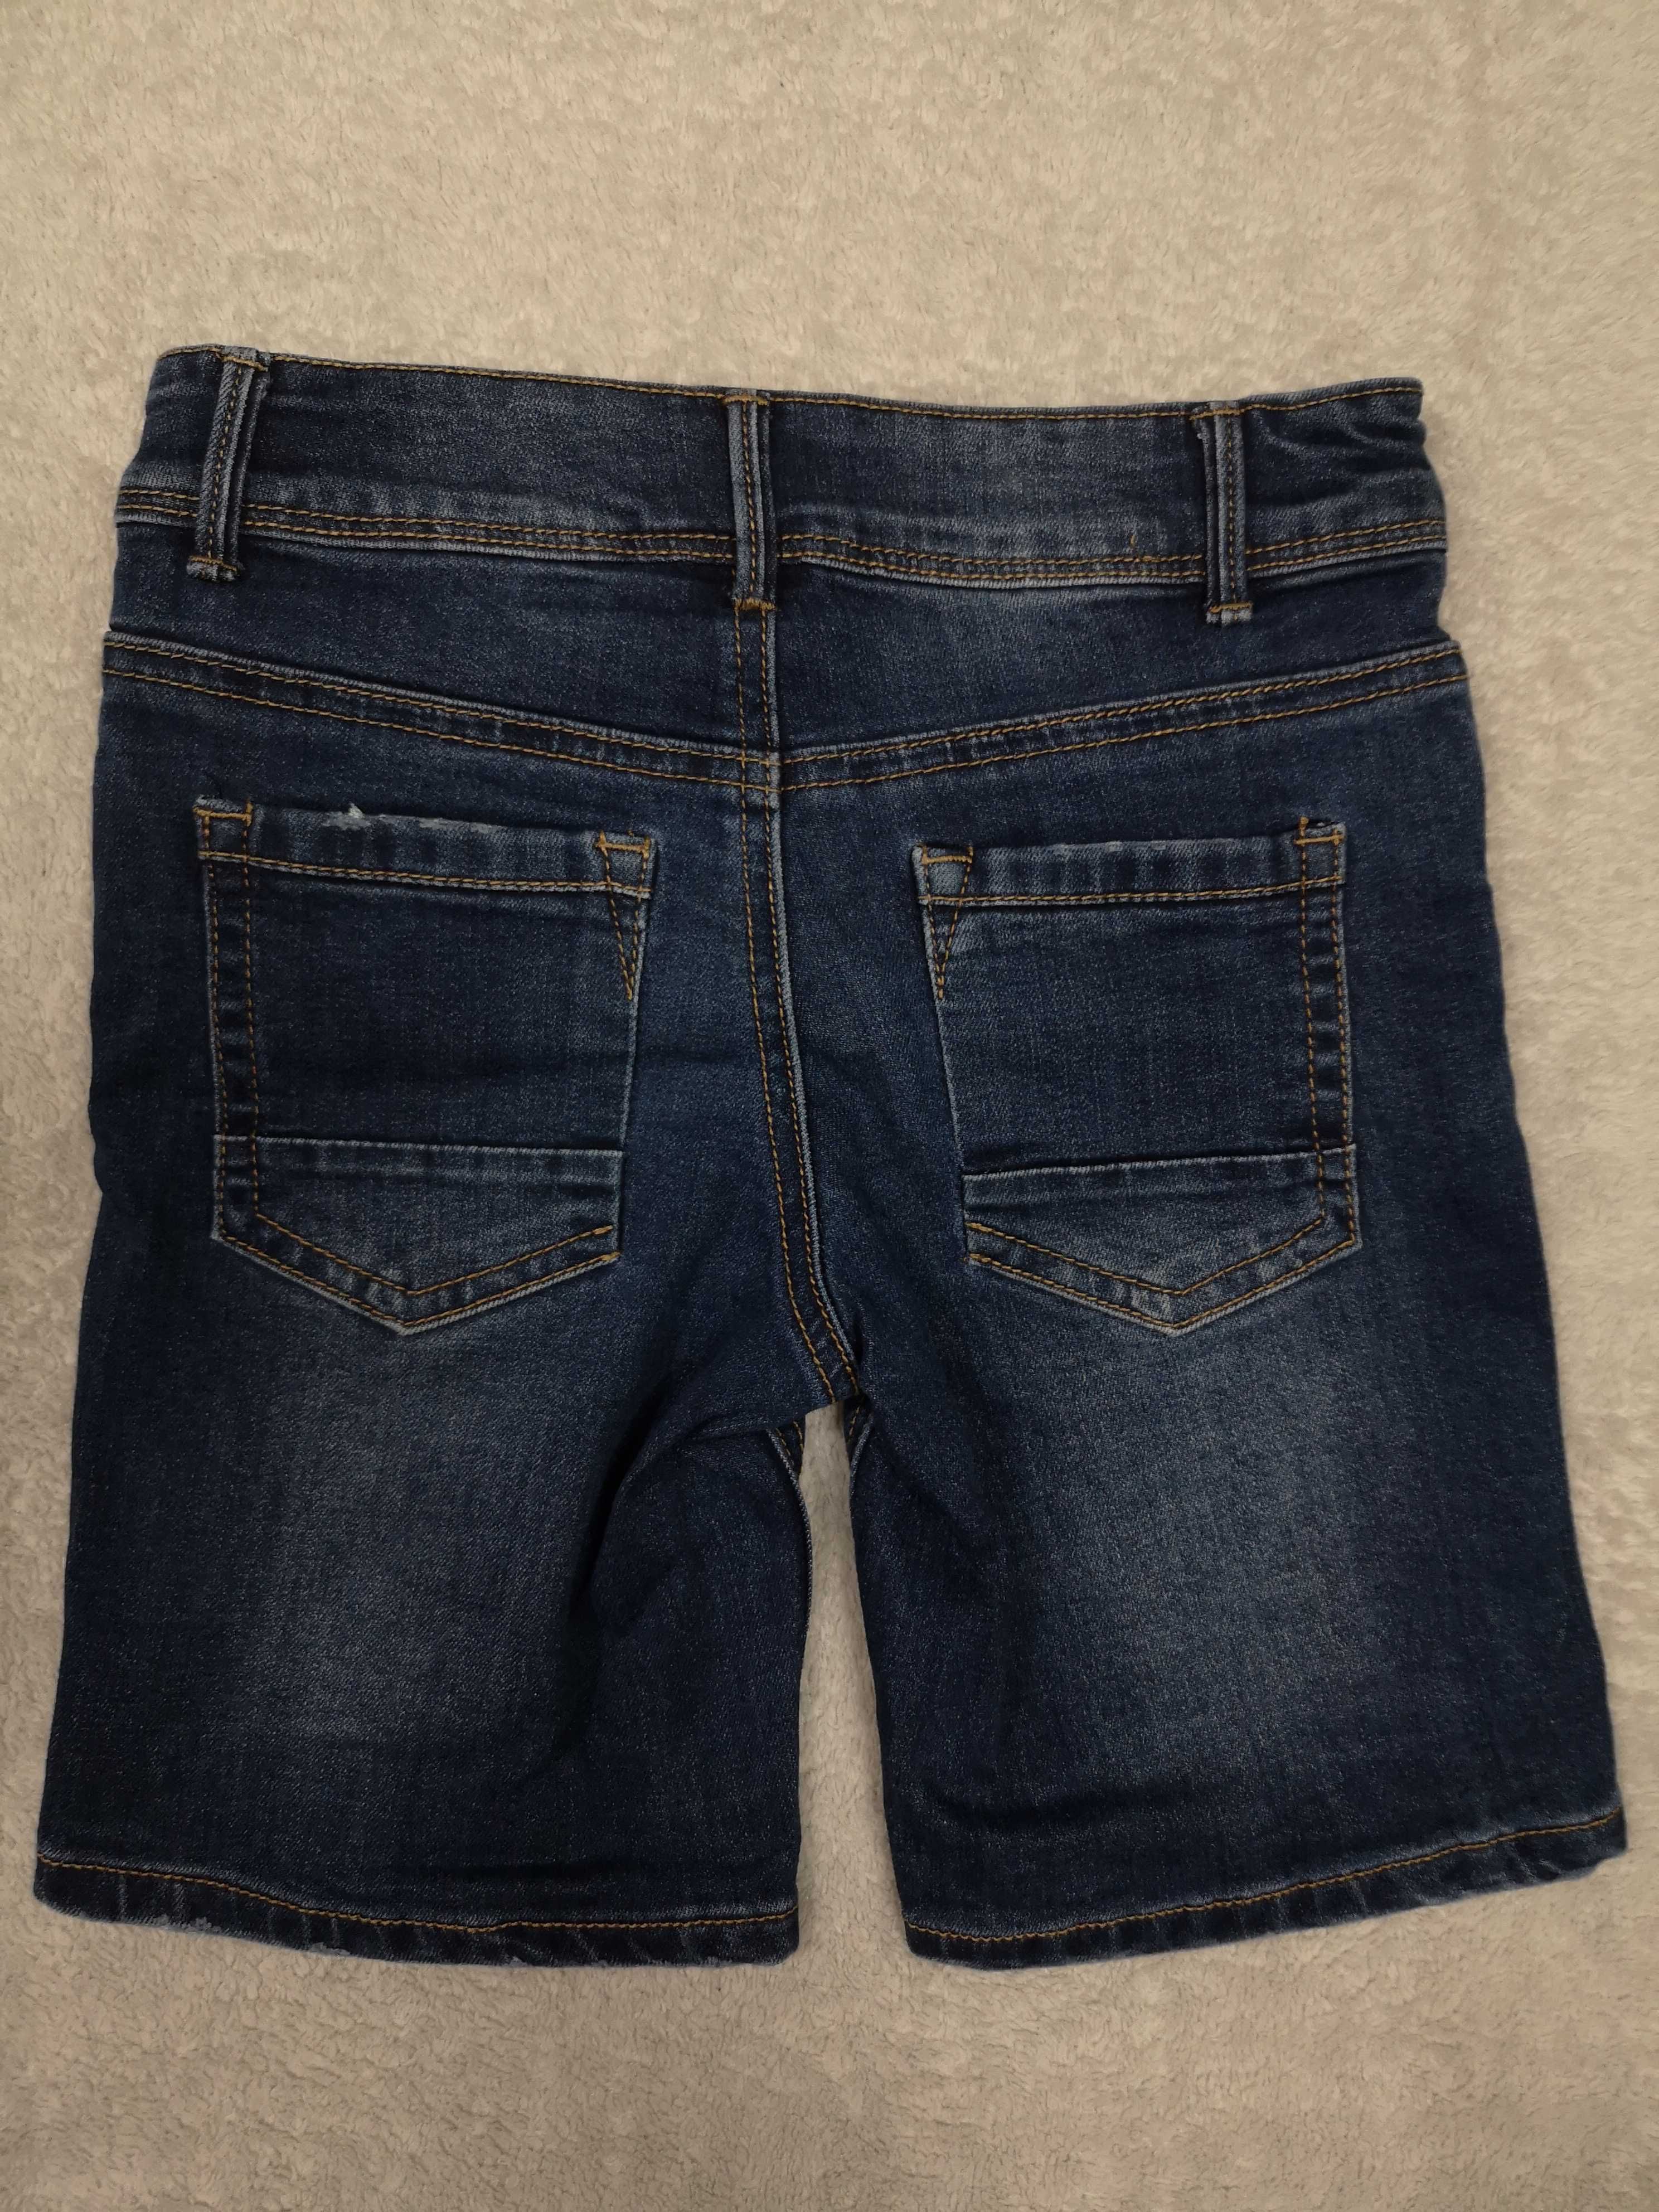 Granatowe krótkie spodenki szorty jeansowe Toy Story 122 jak nowe